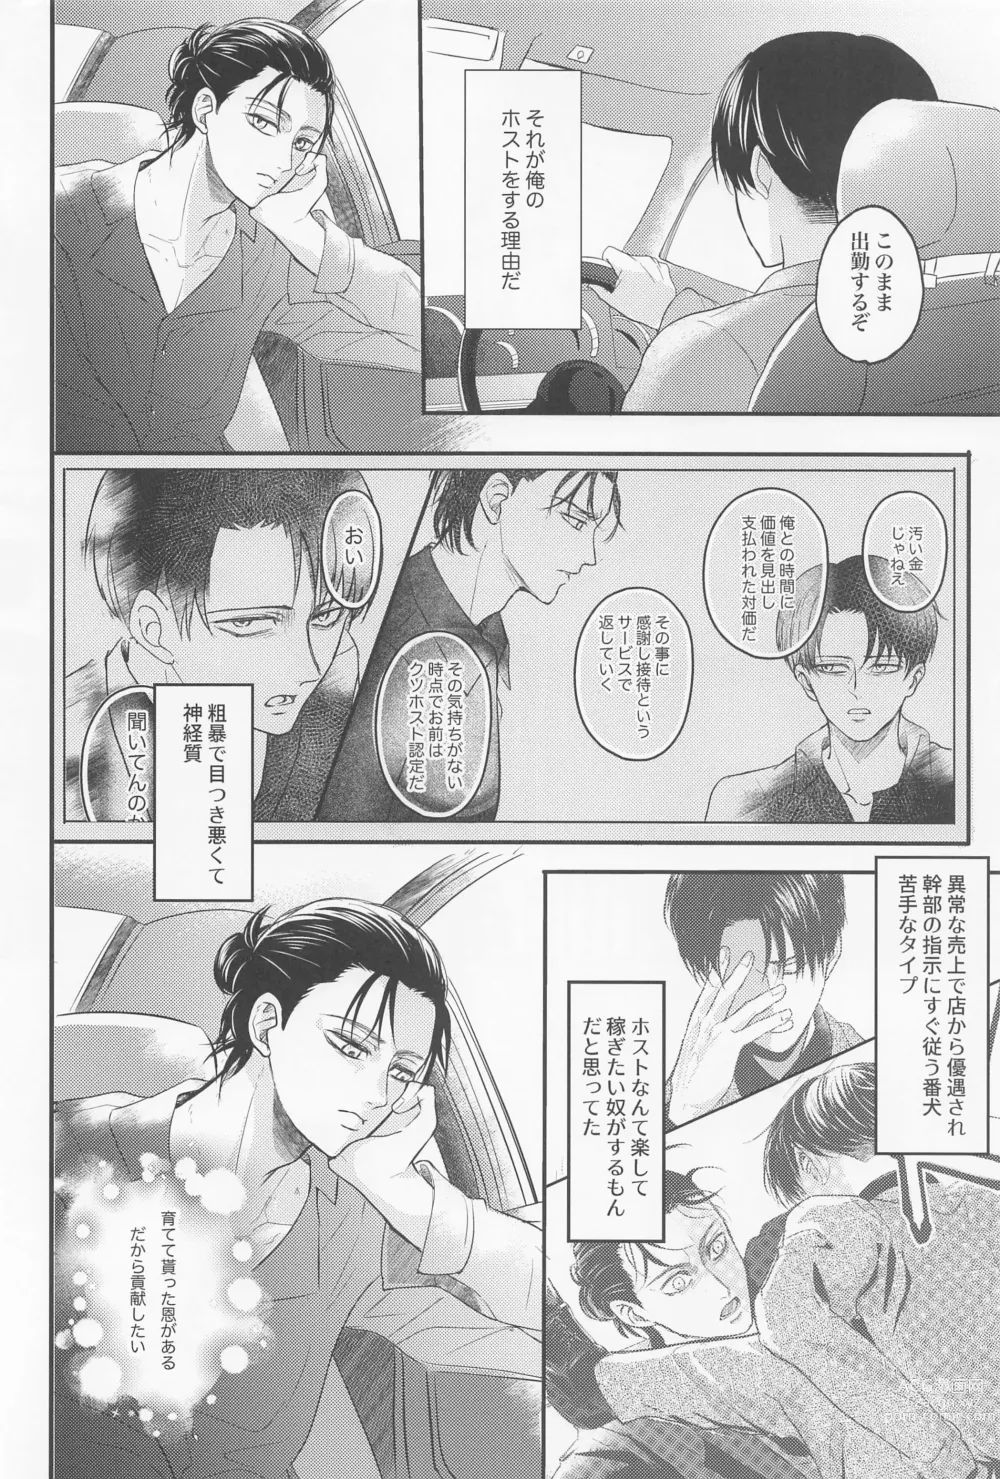 Page 21 of doujinshi Eikyuu Shimei